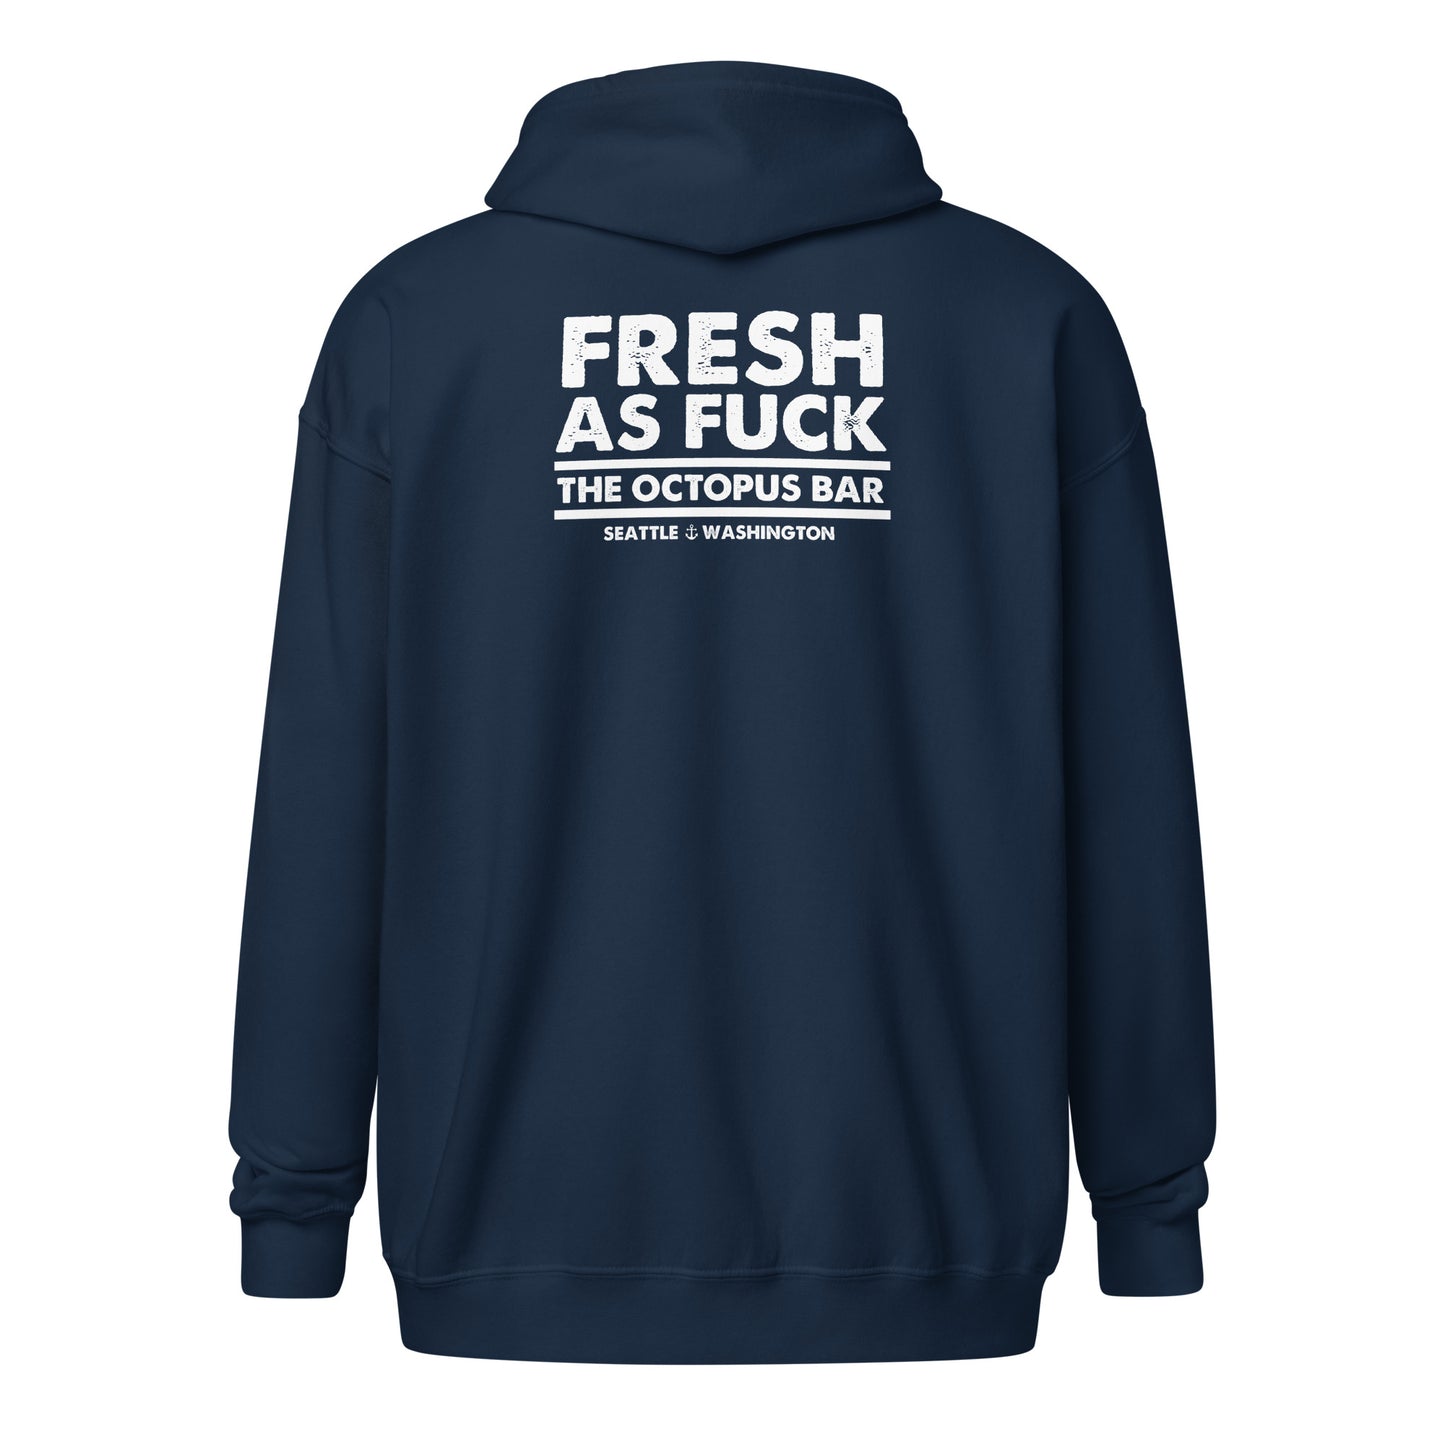 fresh as fuck zip up hoodie